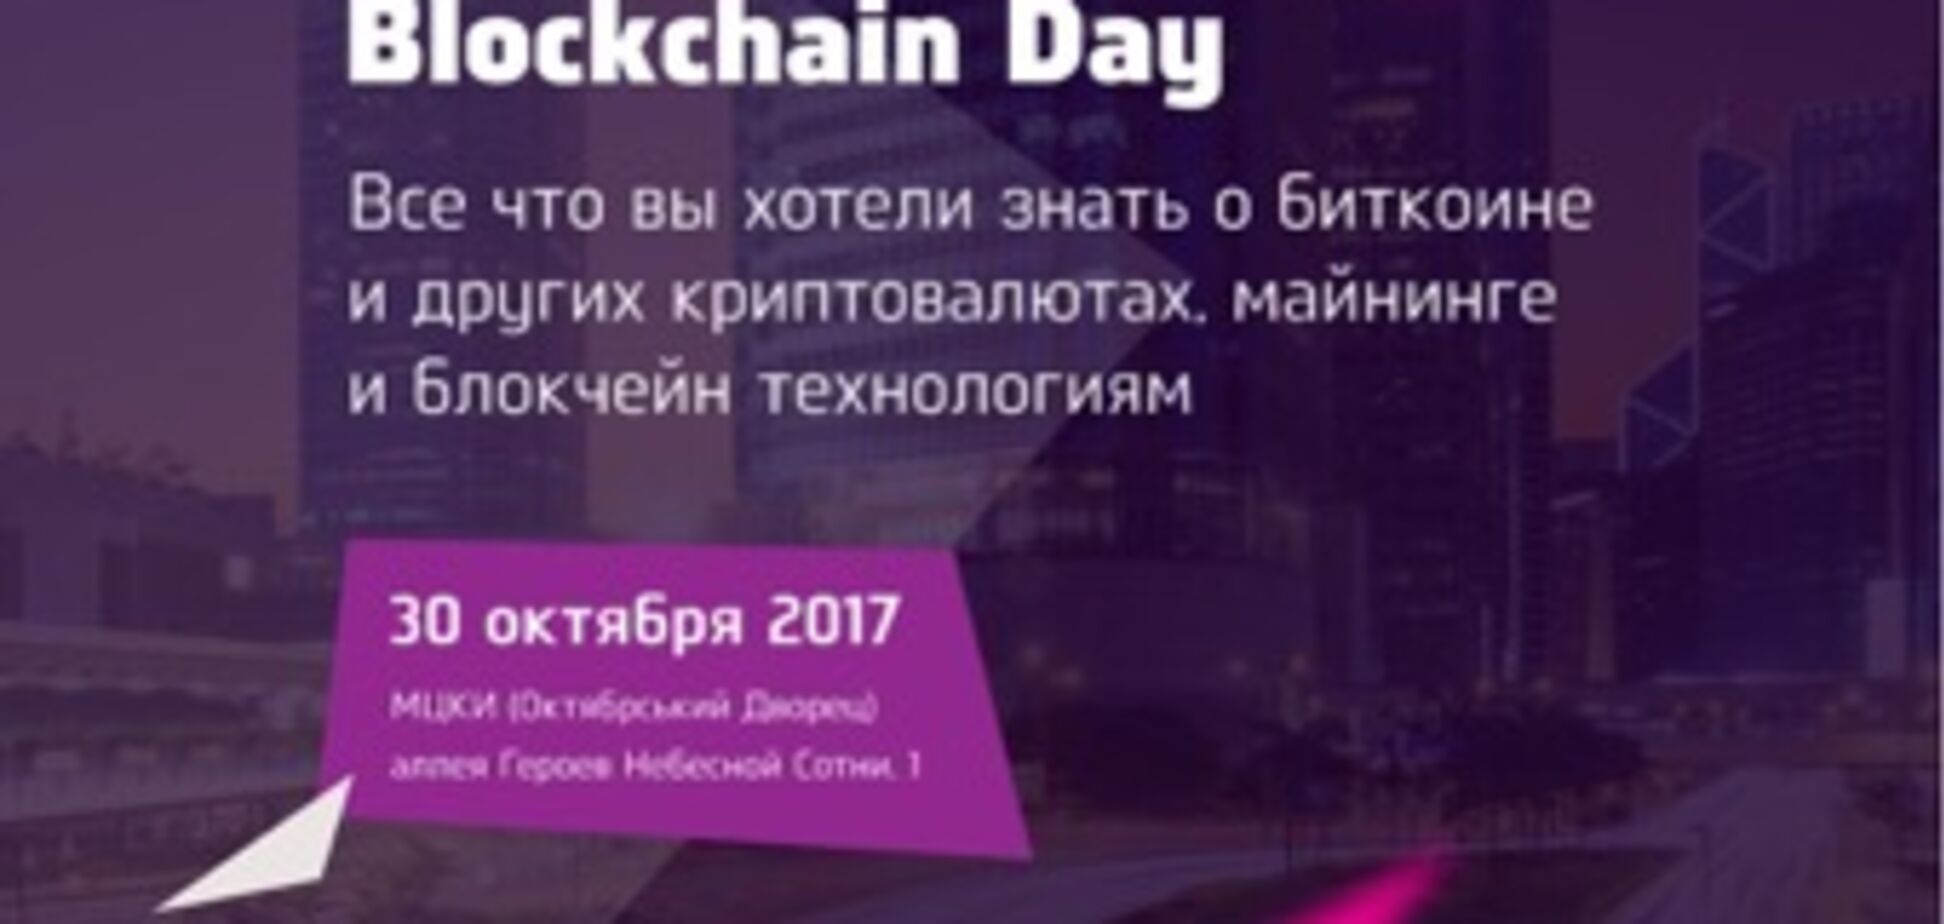 Ukrainian Blockchain Day – отличная возможность наконец-то разобраться в криптовалютах и майнинге